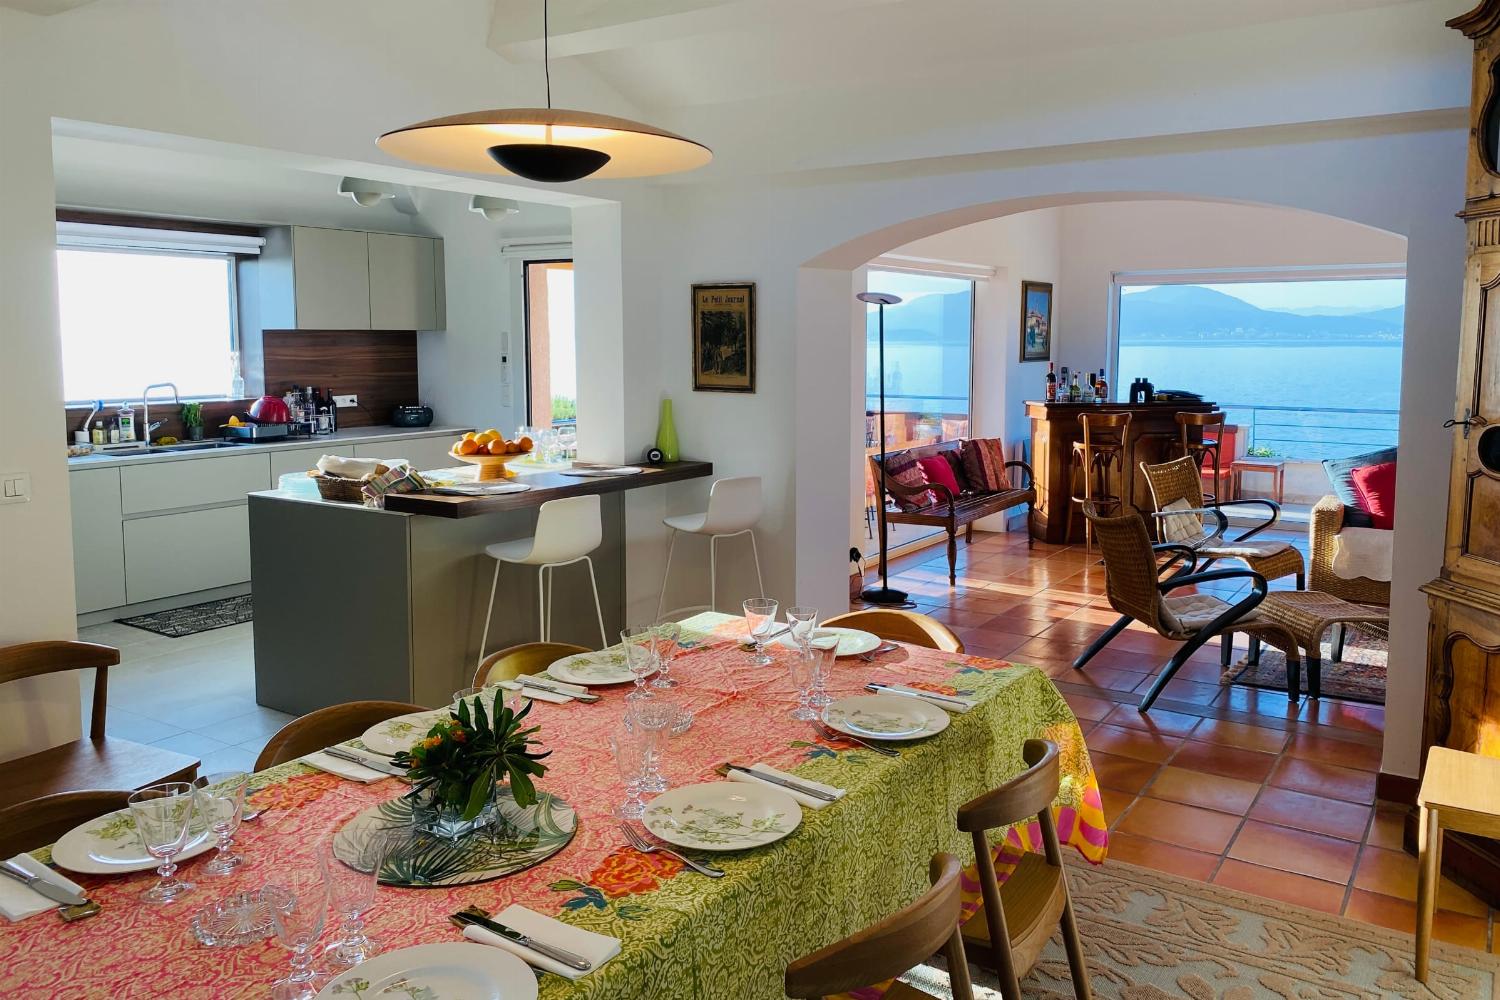 Salle à manger | Villa de vacances en Corse